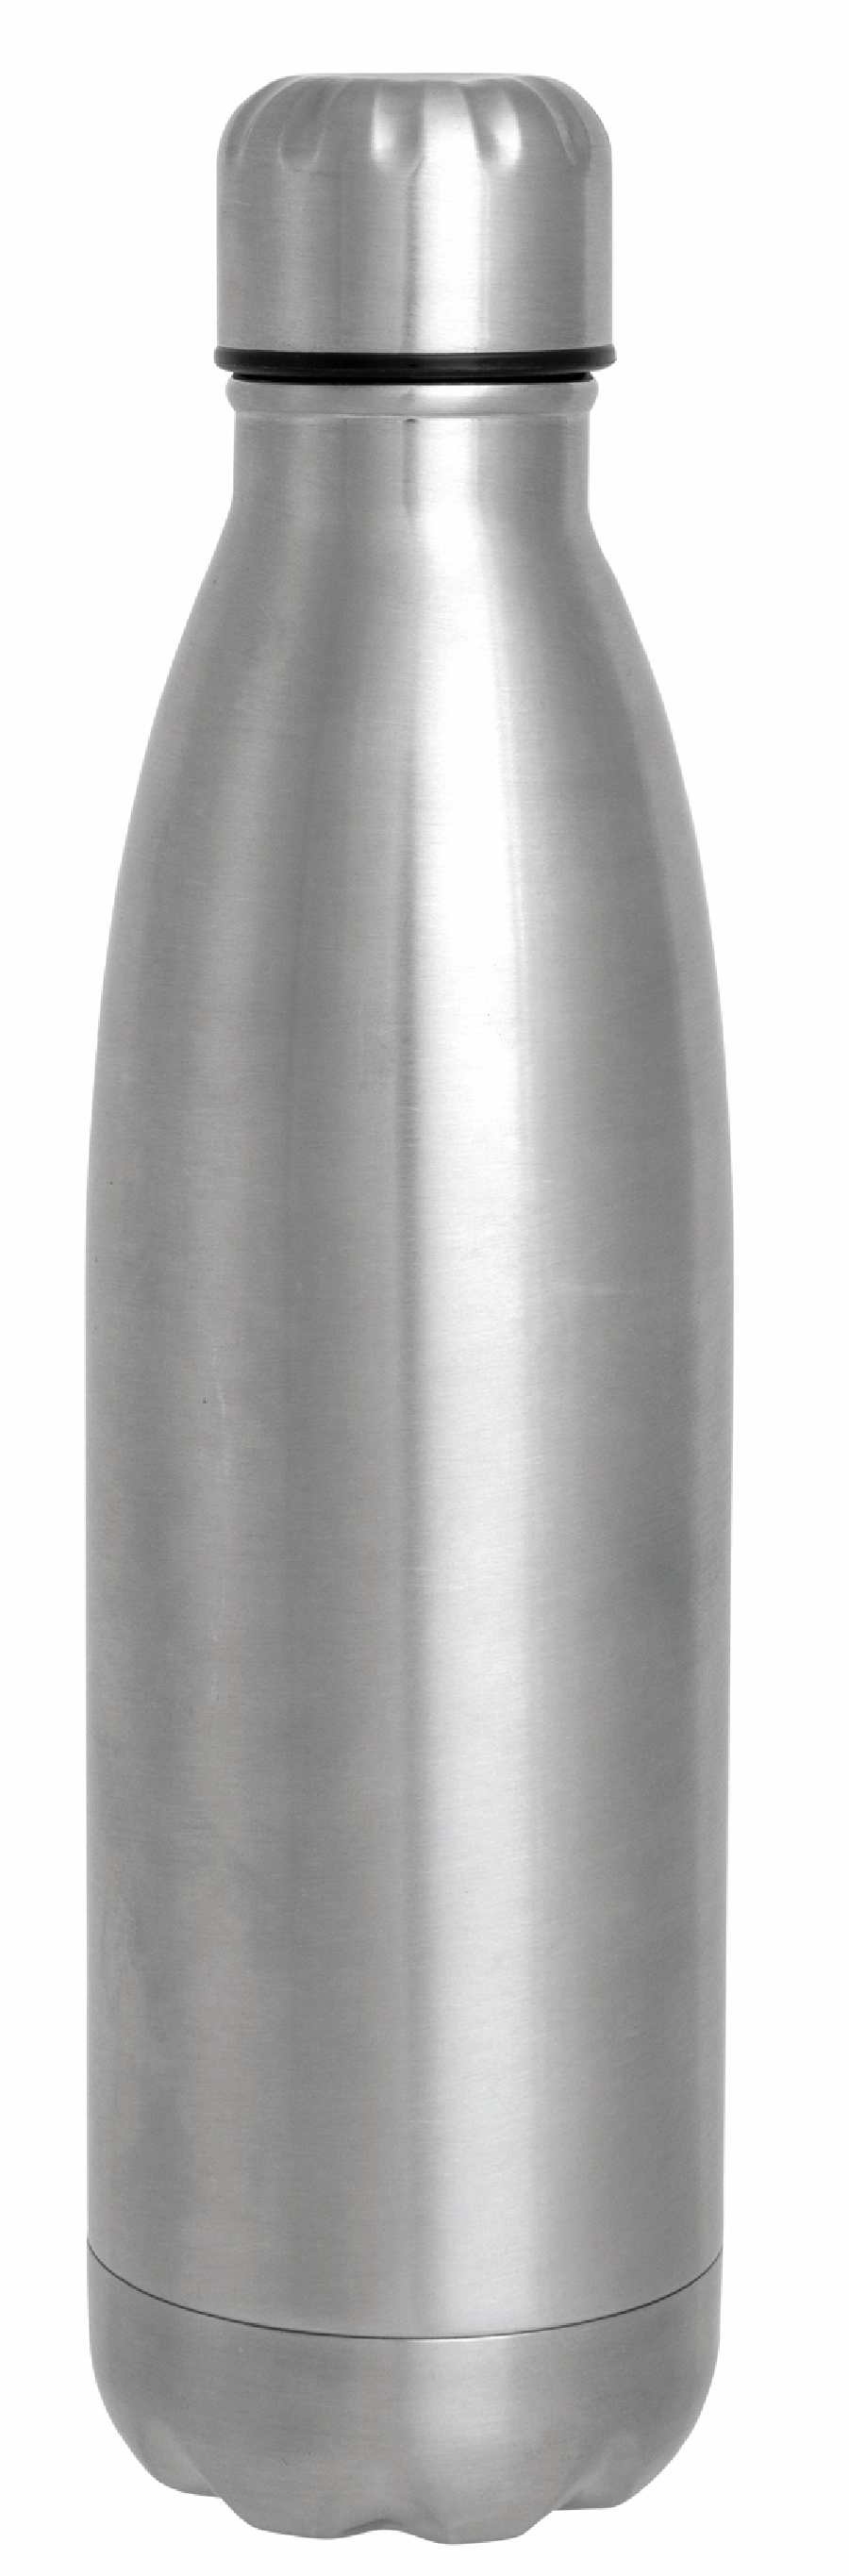 Butelka próżniowa o podwójnych ściankach GOLDEN TASTE, srebrny 56-0304430